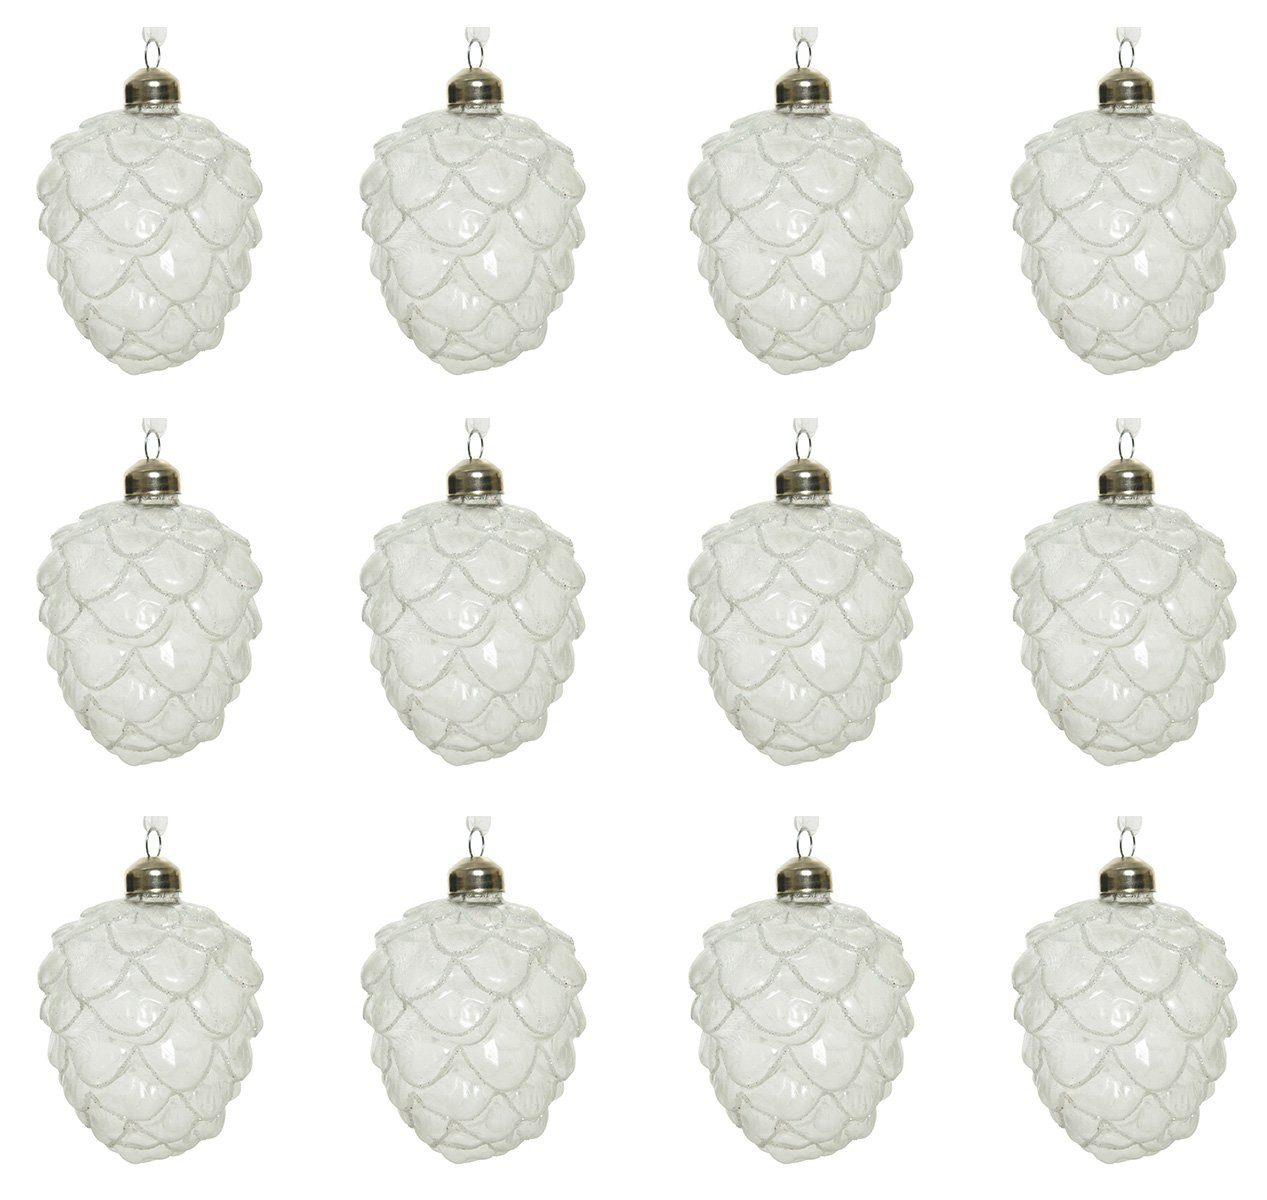 Decoris season decorations Christbaumschmuck, Christbaumschmuck Glas Zapfen 10cm 12er Set weiß / klar gefrostet